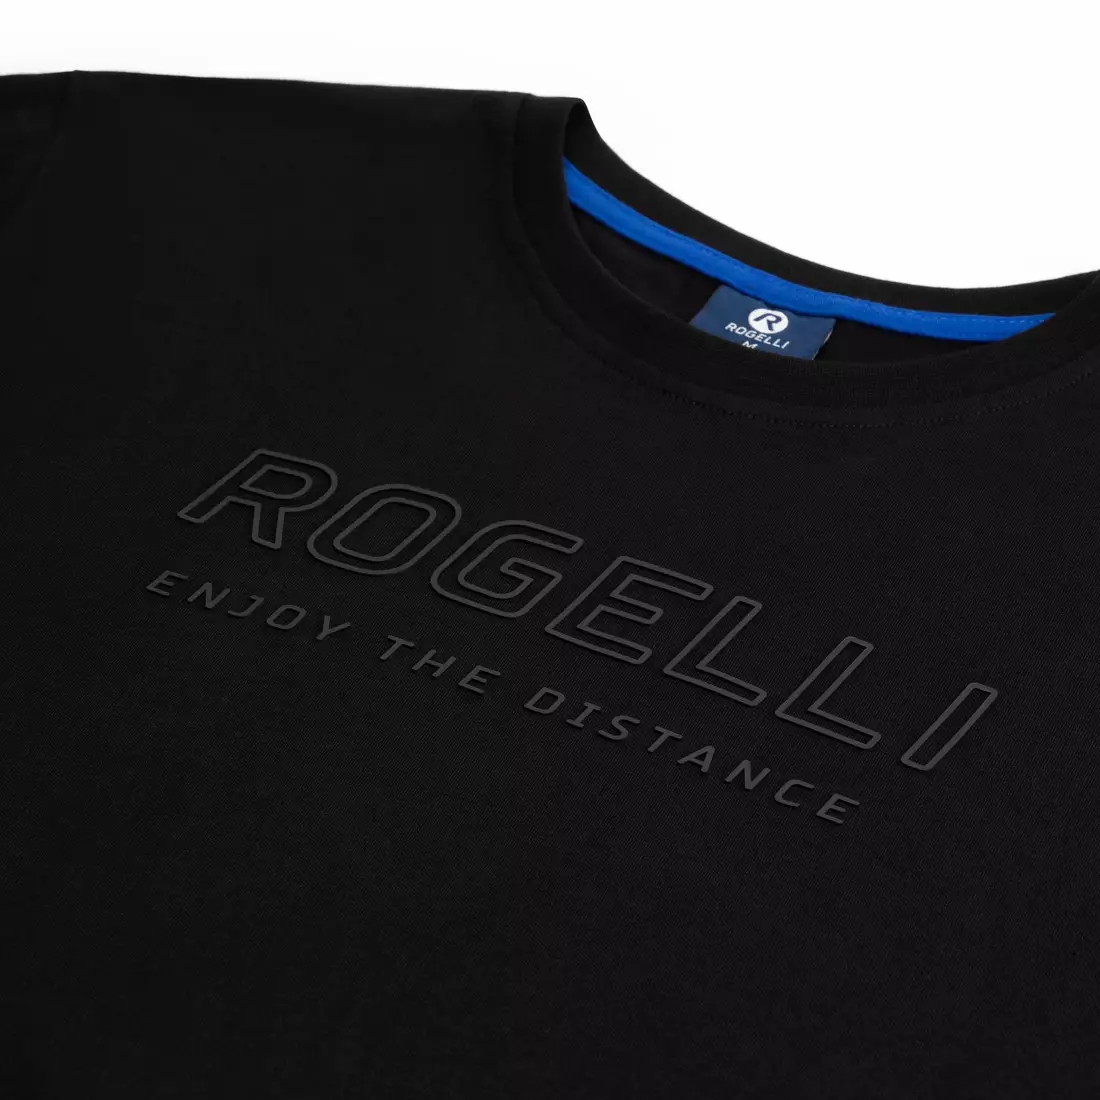 ROGELLI LOGO t-shirt for men, black